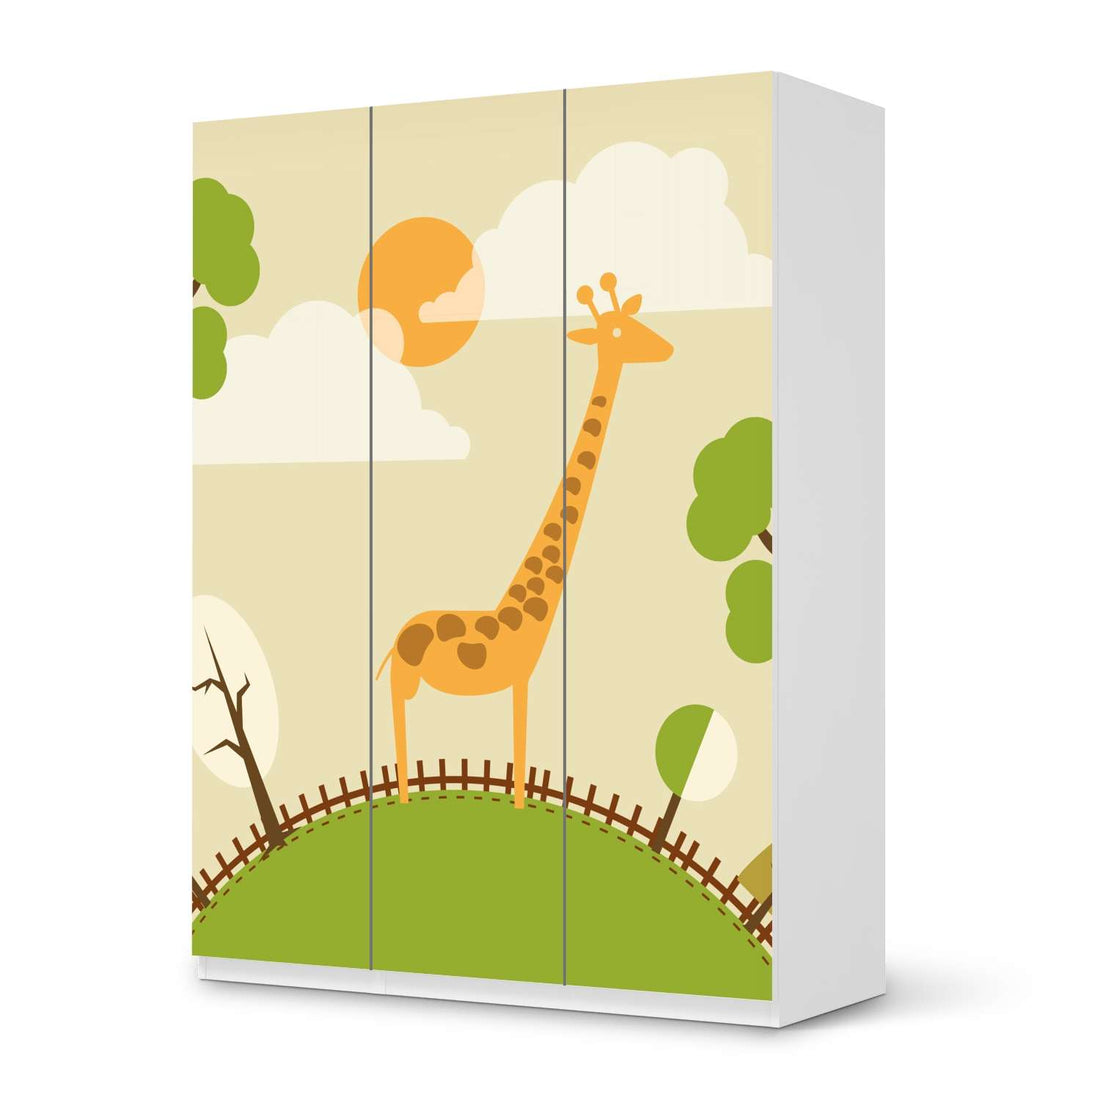 Folie für Möbel Mountain Giraffe - IKEA Pax Schrank 201 cm Höhe - 3 Türen - weiss